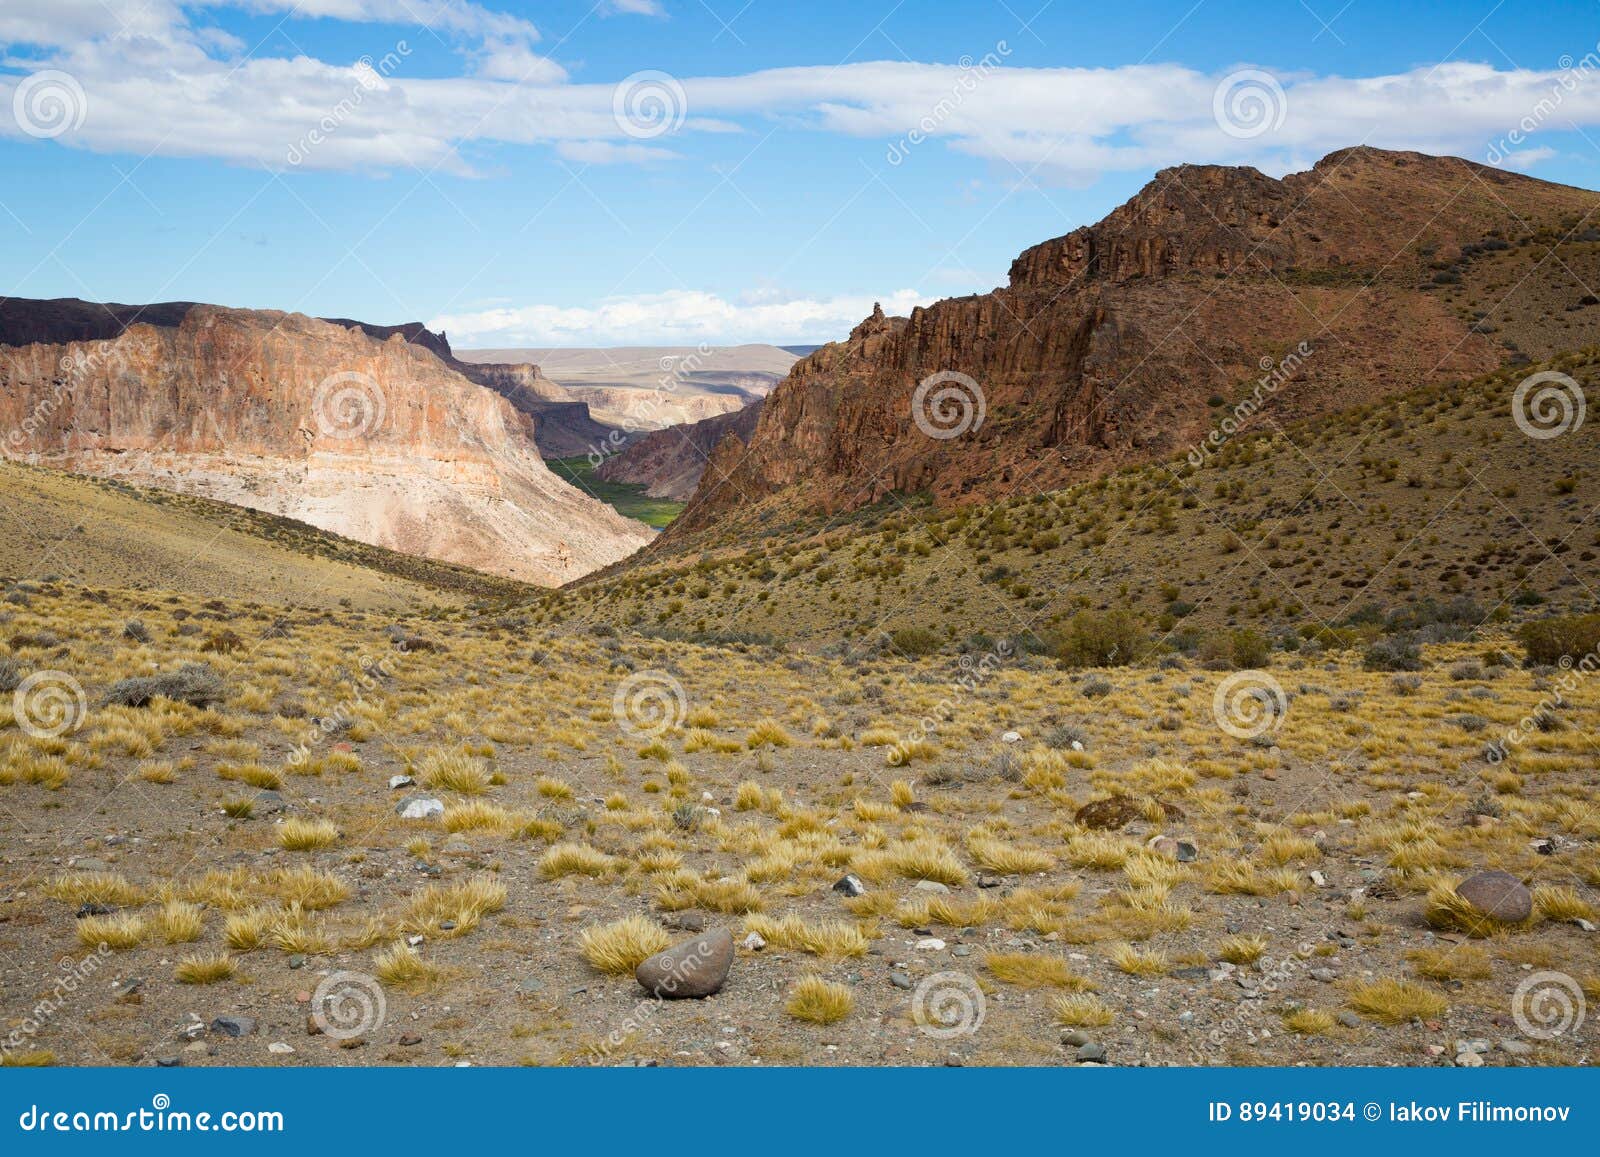 pinturas river canyon